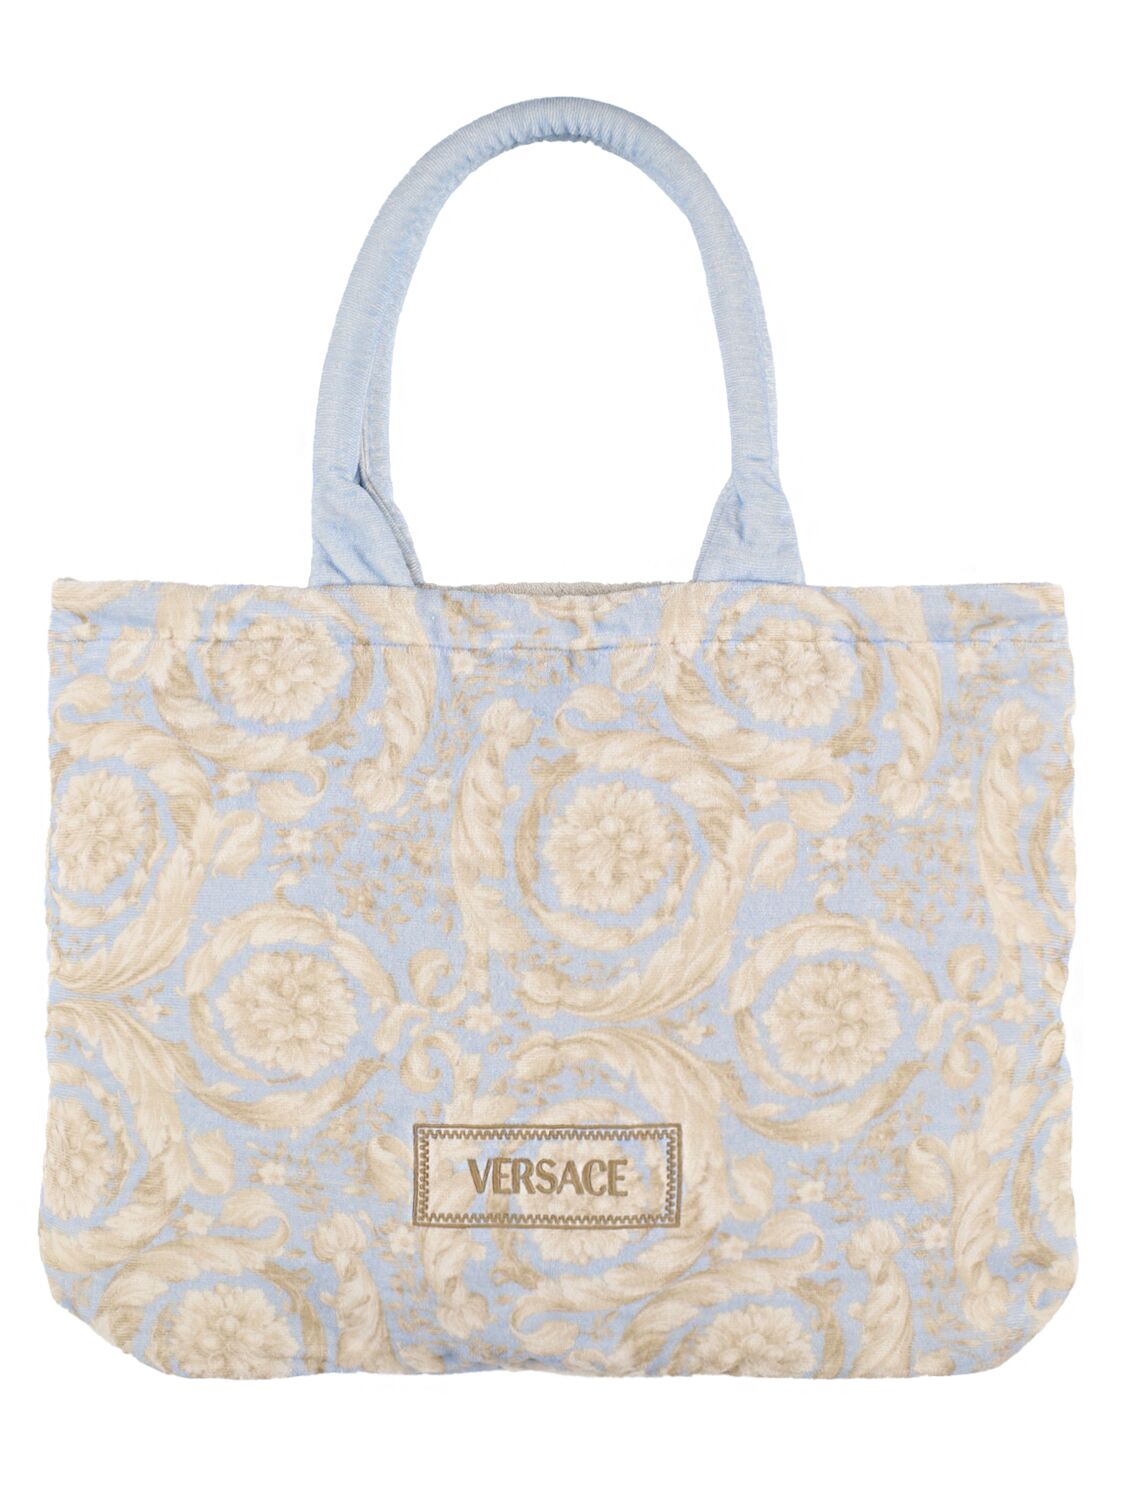 Versace Logo Printed Tote Bag In Burgundy